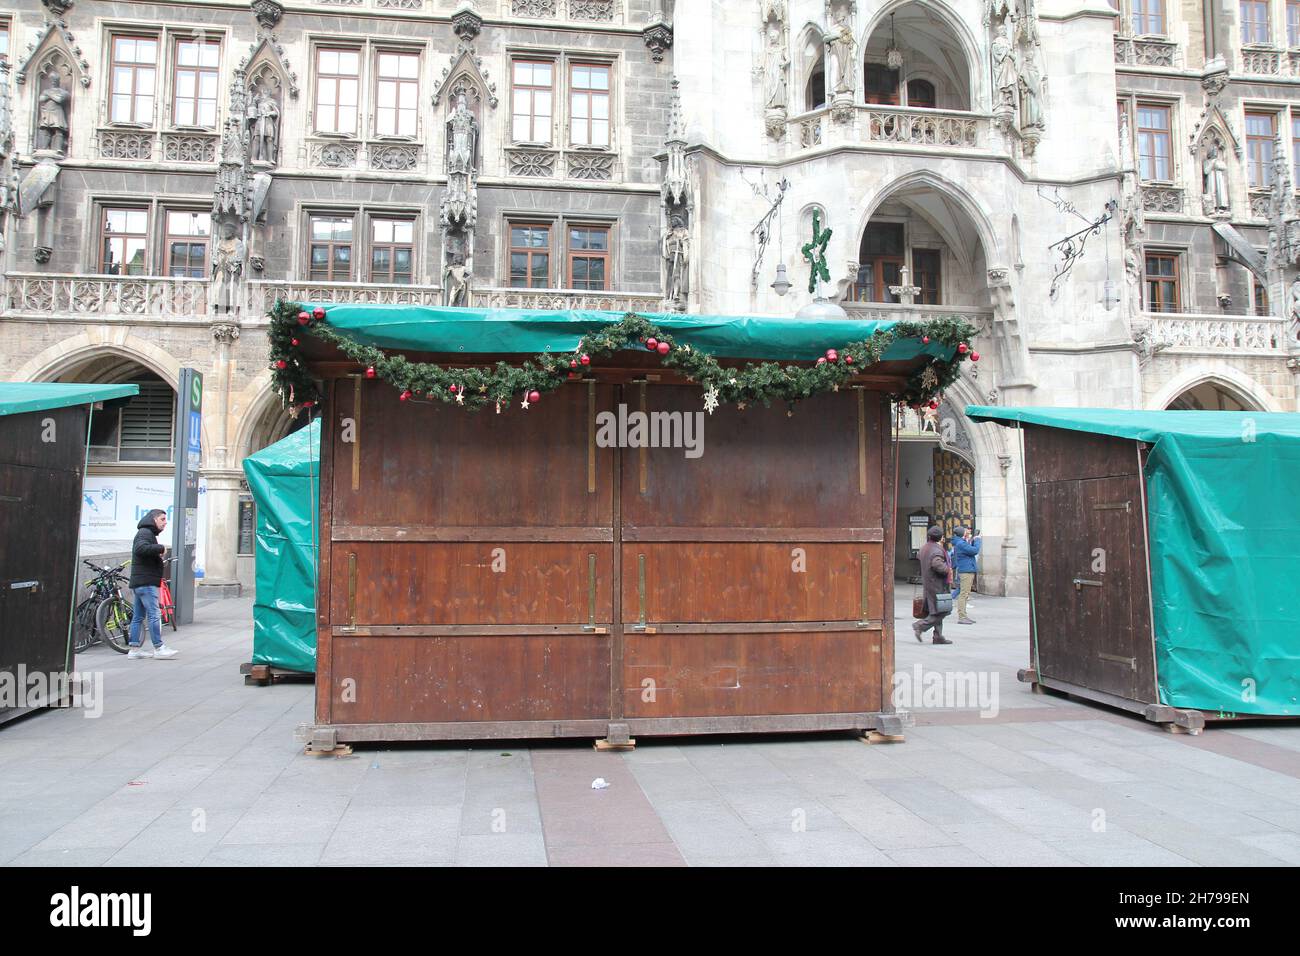 Cabaña cerrada del mercado de Navidad. Nueva Corona rige Baviera: No hay puestos de mercado de Navidad en Munich, Baviera, Alemania. Foto de stock